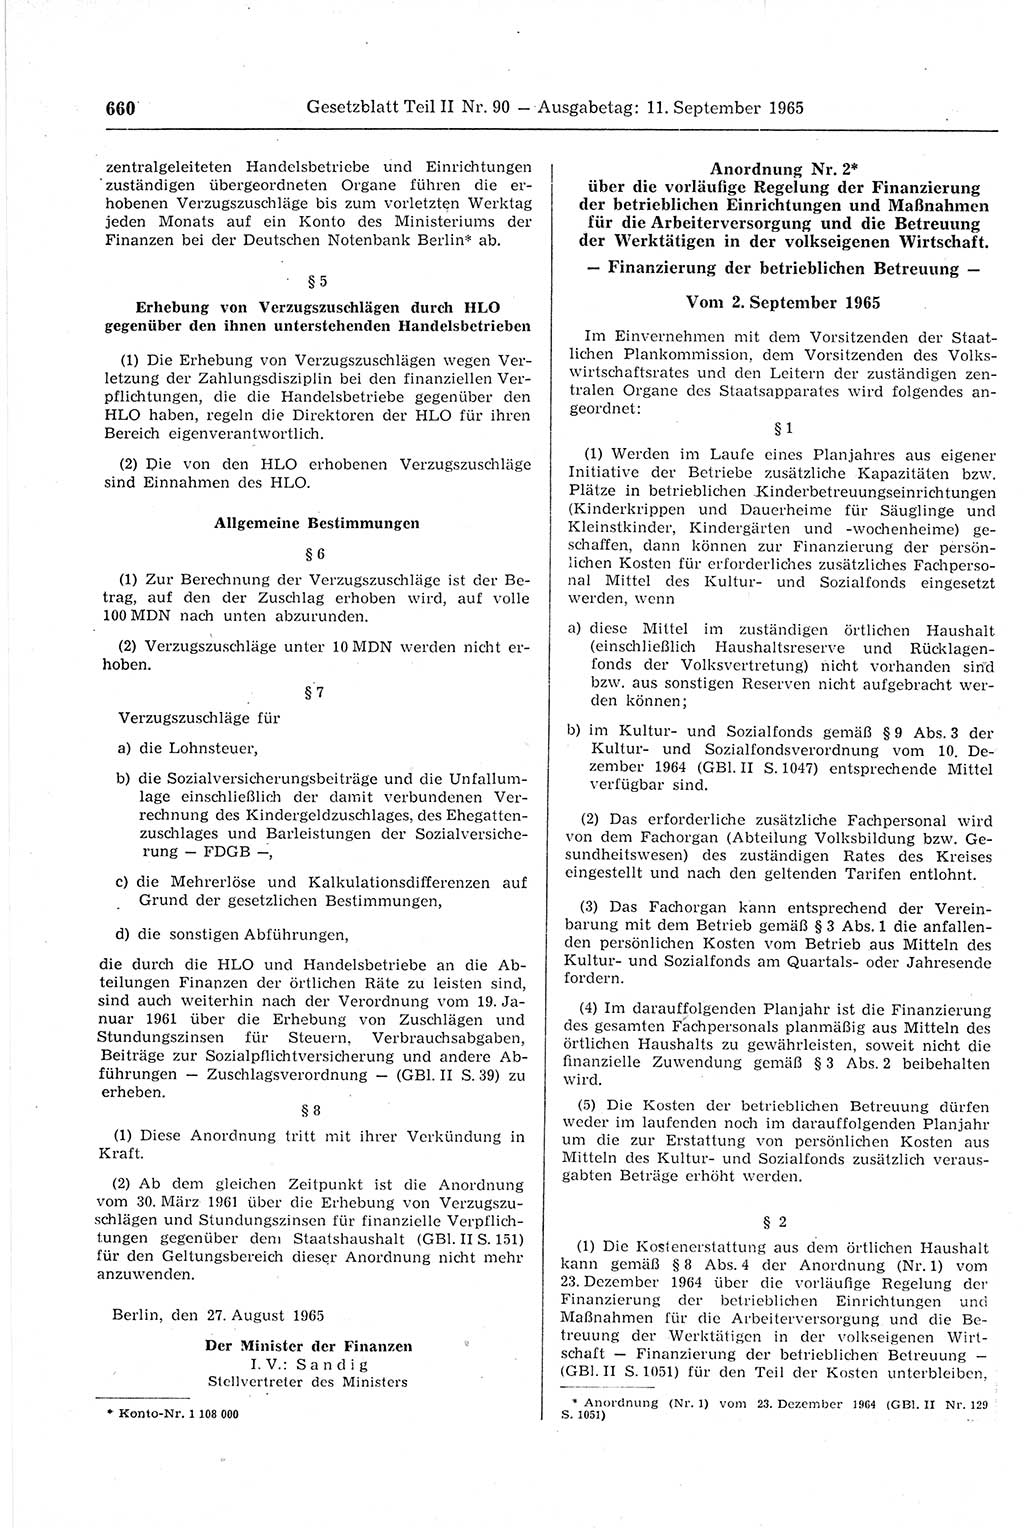 Gesetzblatt (GBl.) der Deutschen Demokratischen Republik (DDR) Teil ⅠⅠ 1965, Seite 660 (GBl. DDR ⅠⅠ 1965, S. 660)